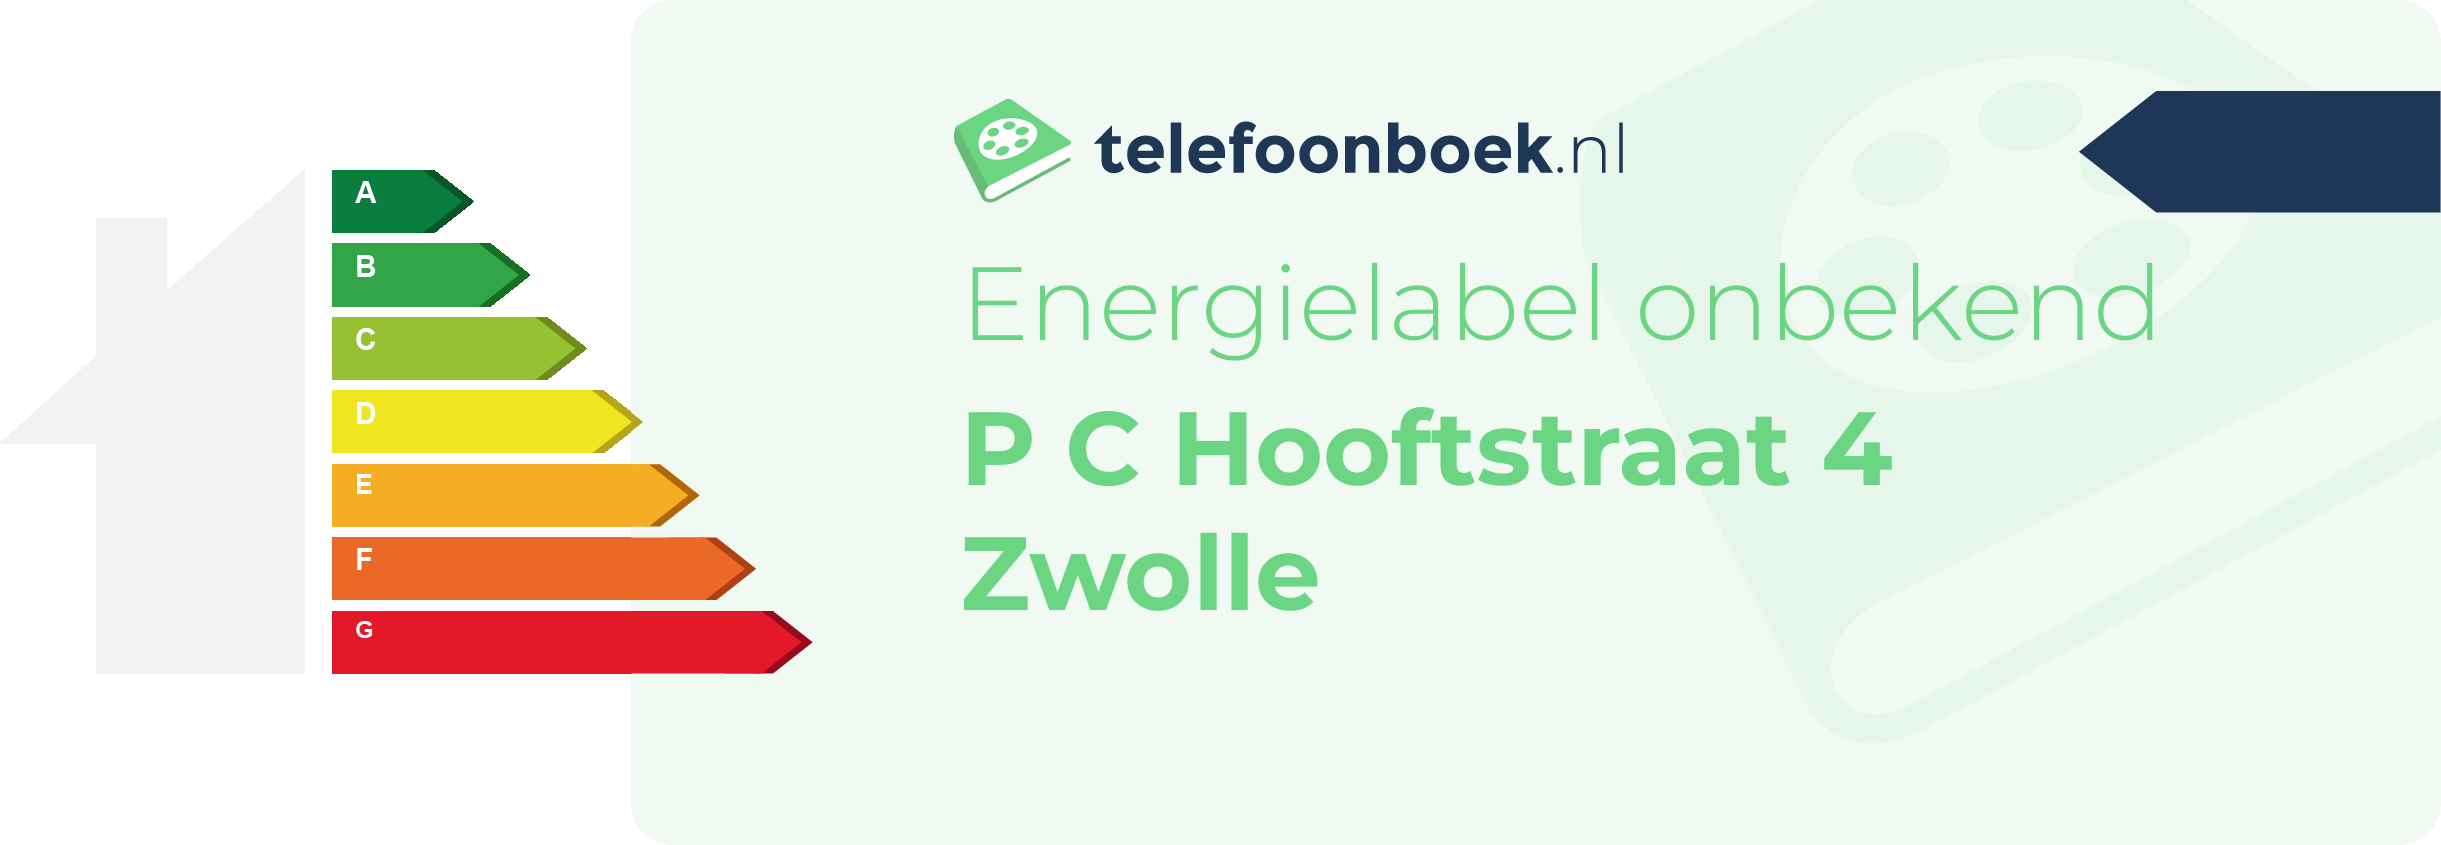 Energielabel P C Hooftstraat 4 Zwolle